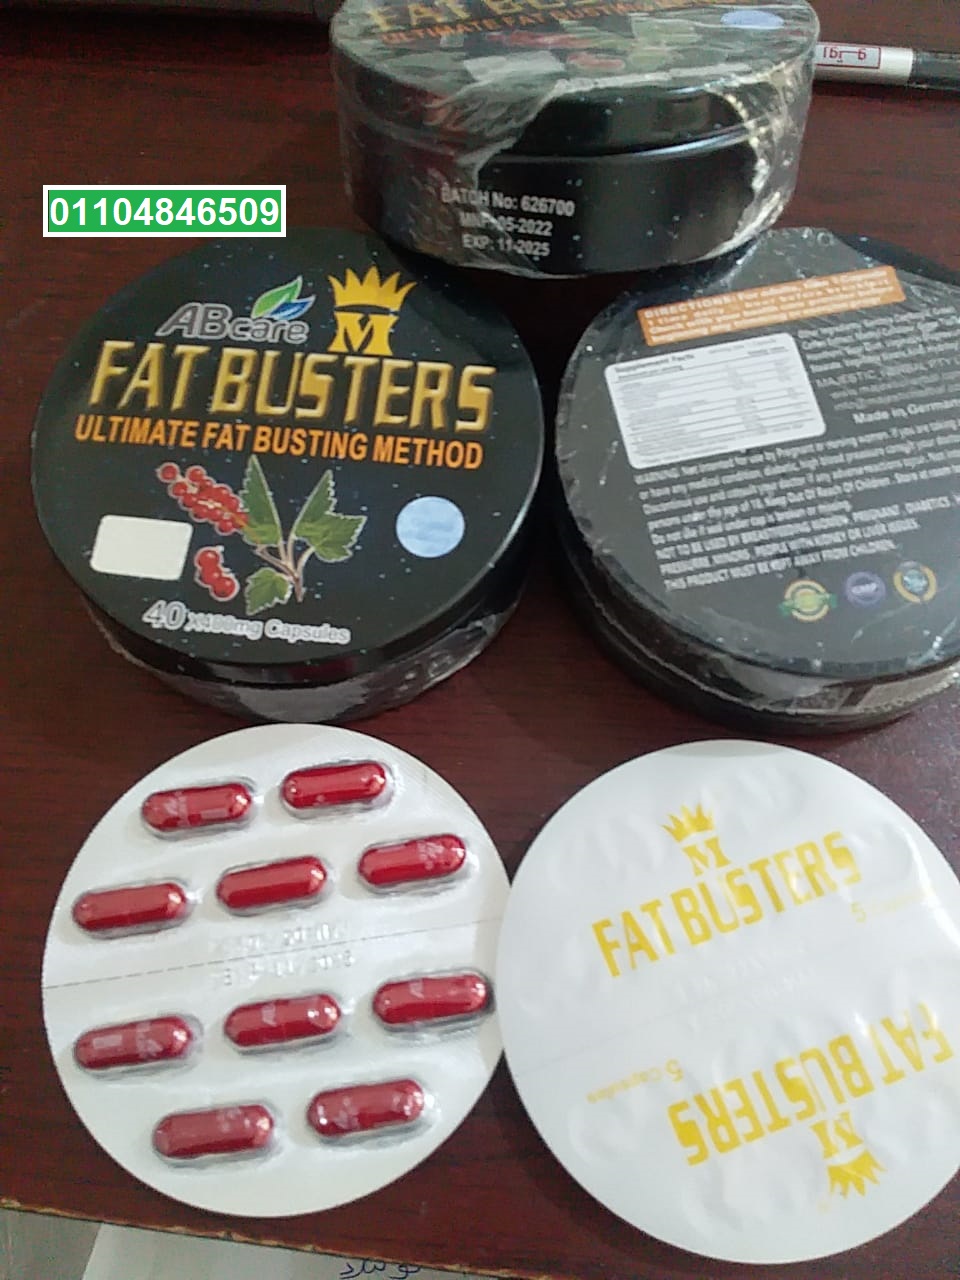 كبسولات فات باسترز للتخسيس هيدروكسي fatbusters